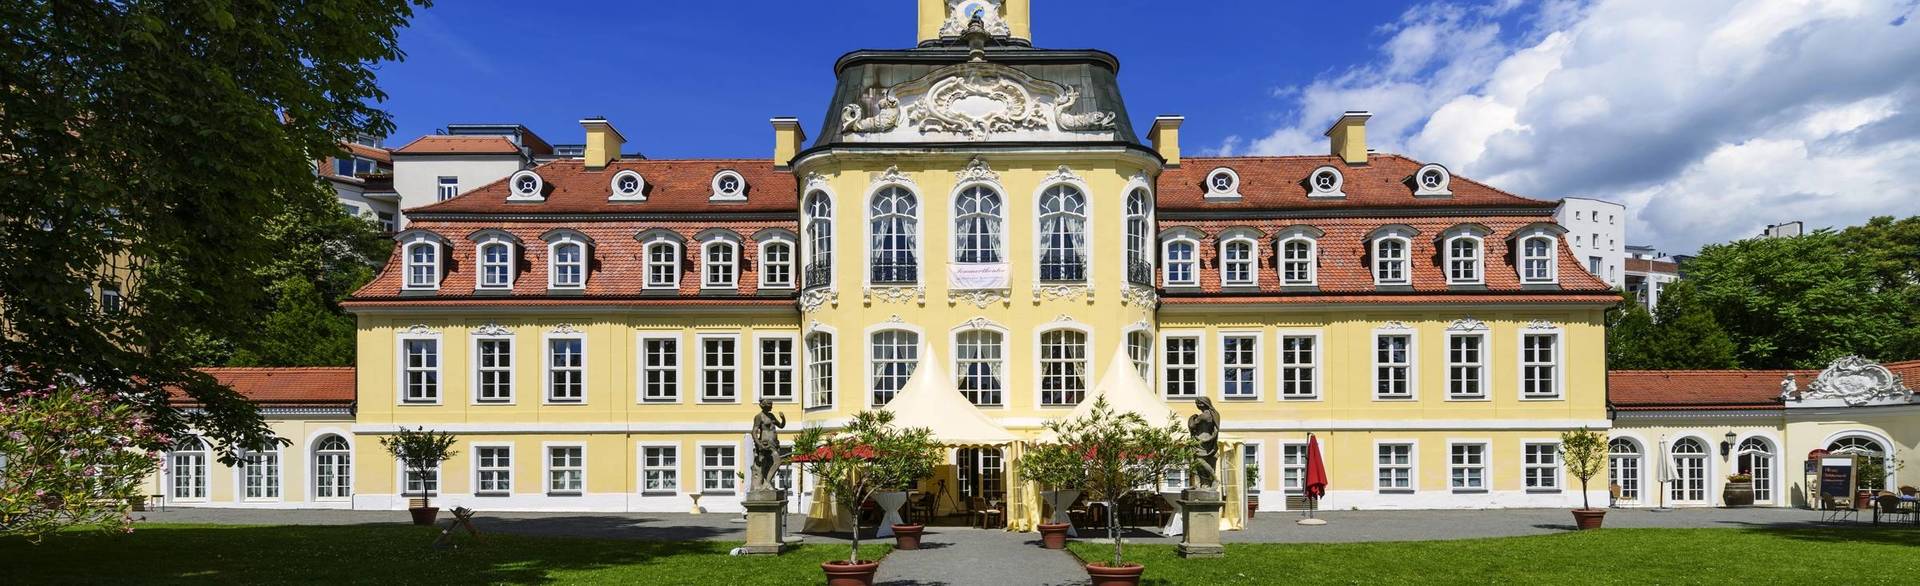 Reiseschein einlösen und Leipzig entdecken - h-hotels.com - Offizielle  Webseite